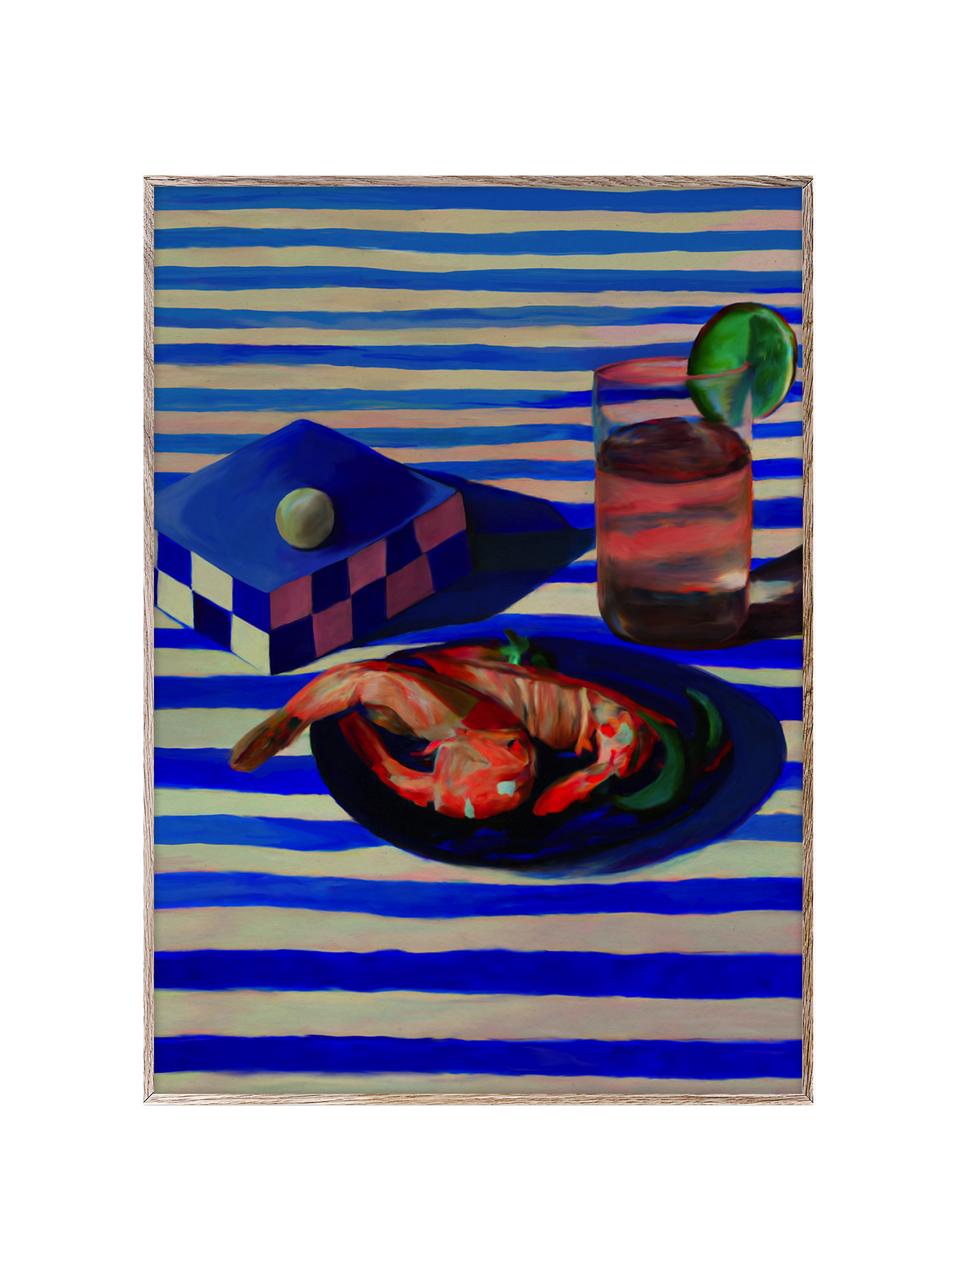 Póster Shrimp & Stripes, Papel Hahnemühle mate de 210 g, impresión digital a 10 colores resistentes a los rayos UV, Azul real, rojo coral, An 30 x Al 40 cm